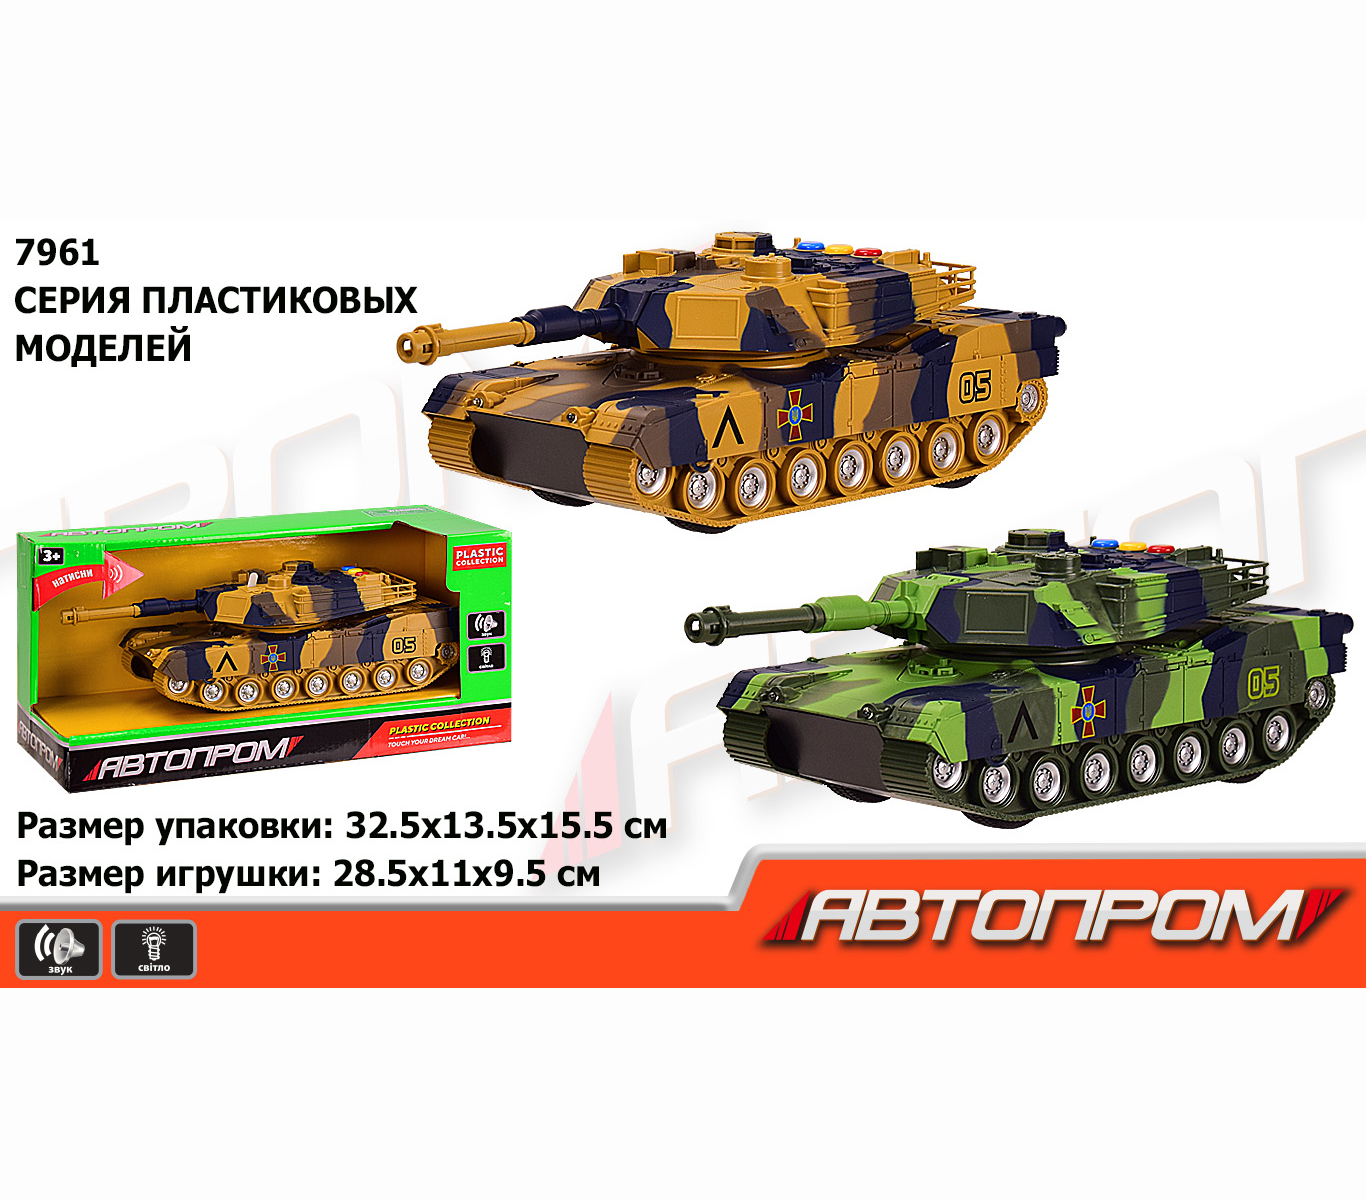 Модель военного танка из пластика 'Автопром'